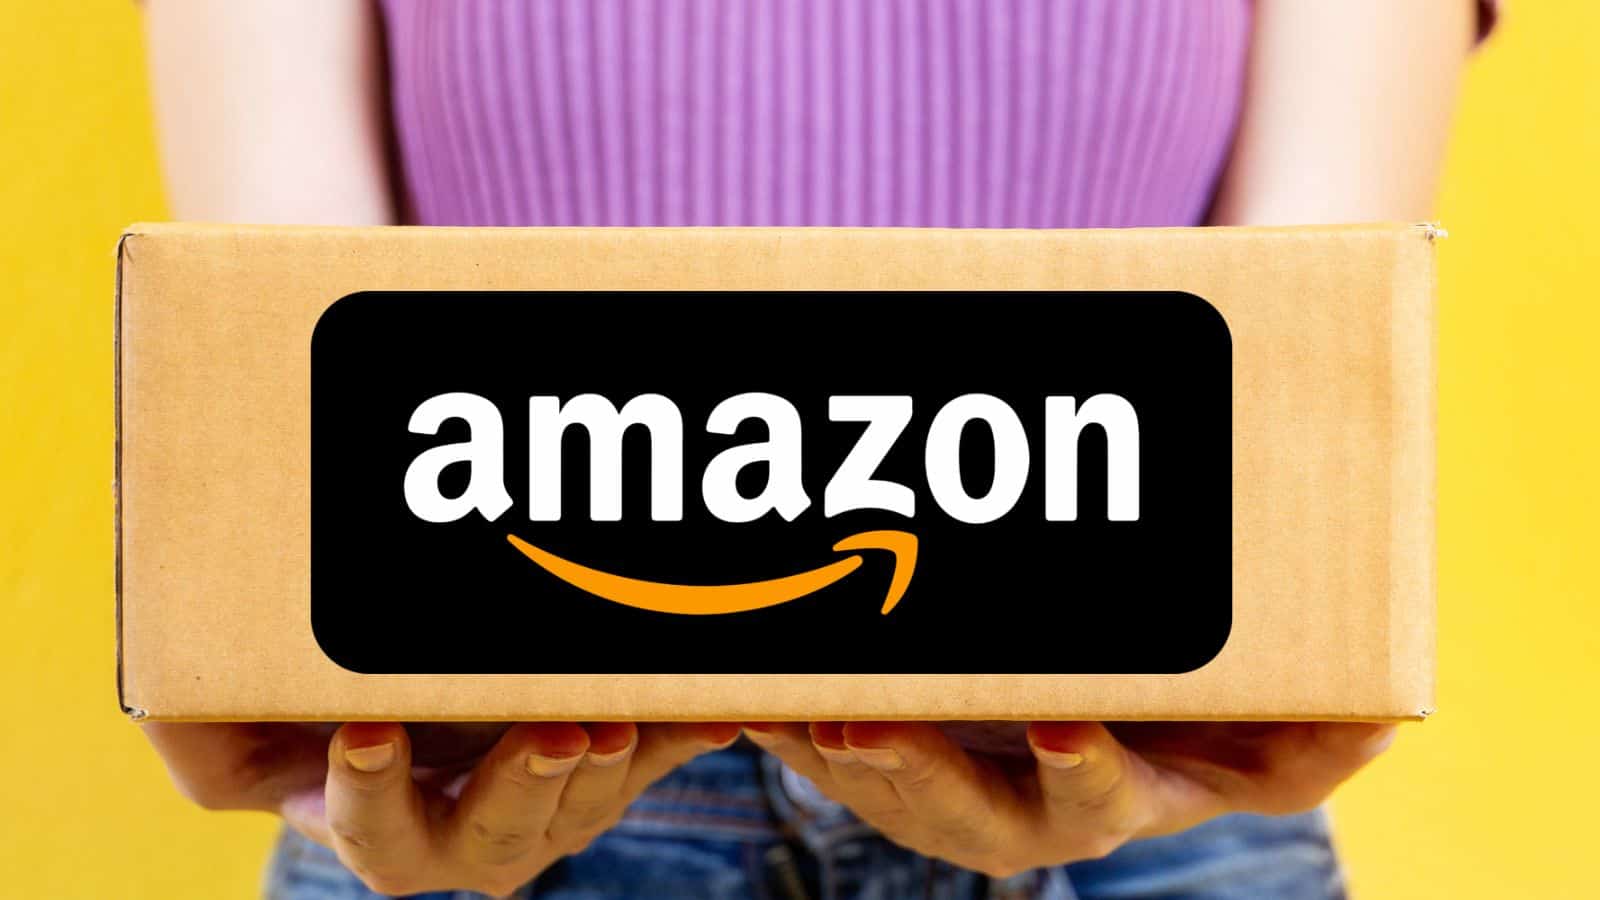 Amazon abbassa i PREZZI: sconti FOLLI all'80% su tutto solo oggi